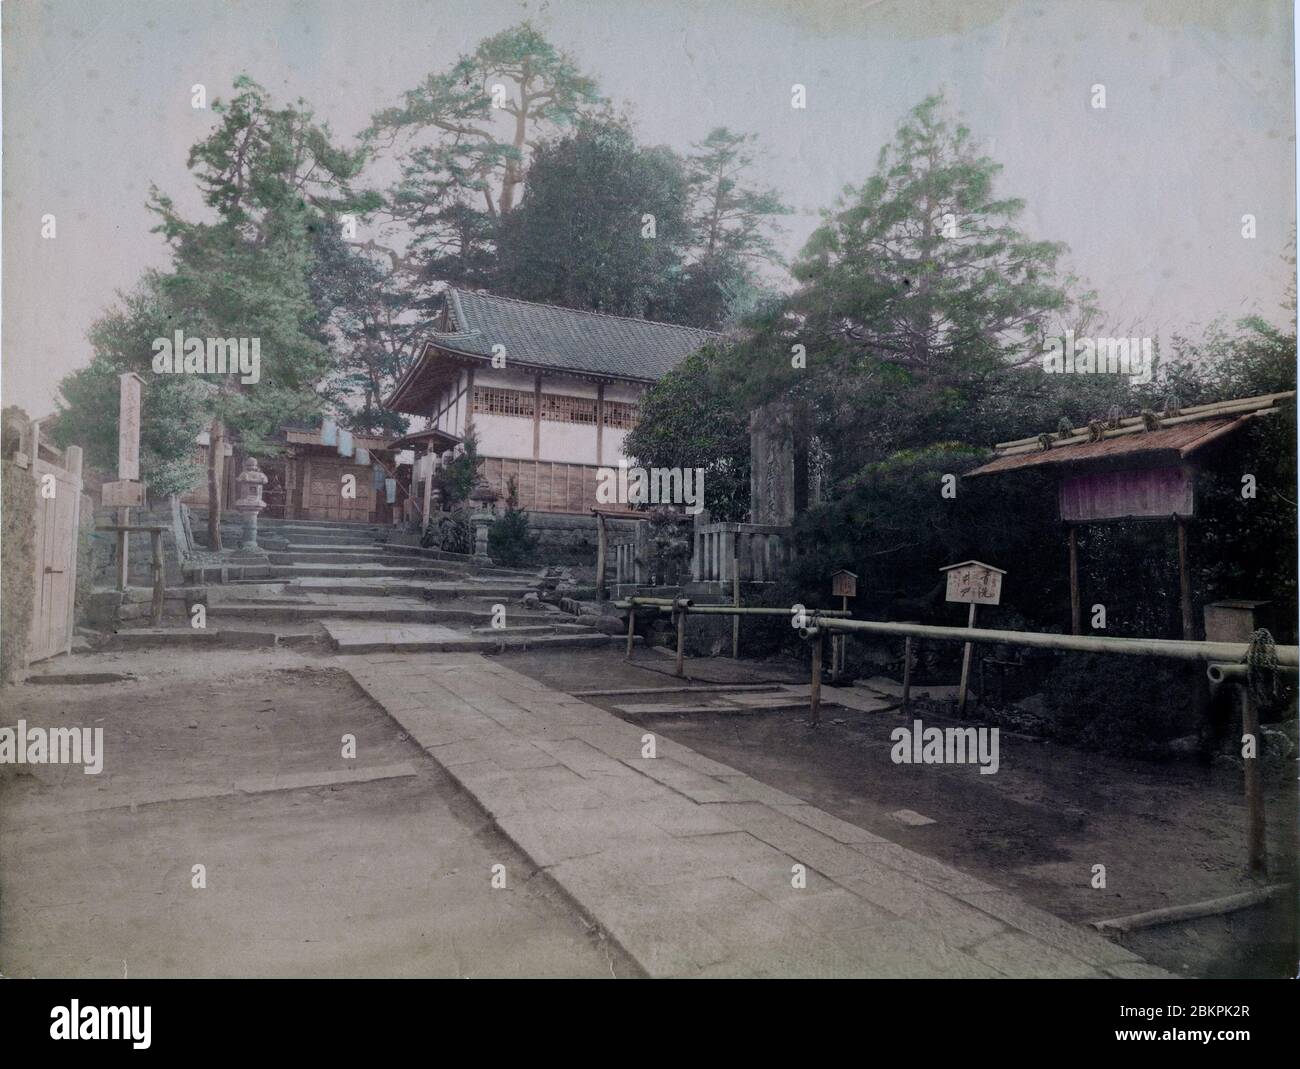 [ 1890 Giappone - Tempio Giapponese ] - Tempio Buddista. foto di albume vintage del xix secolo. Foto Stock